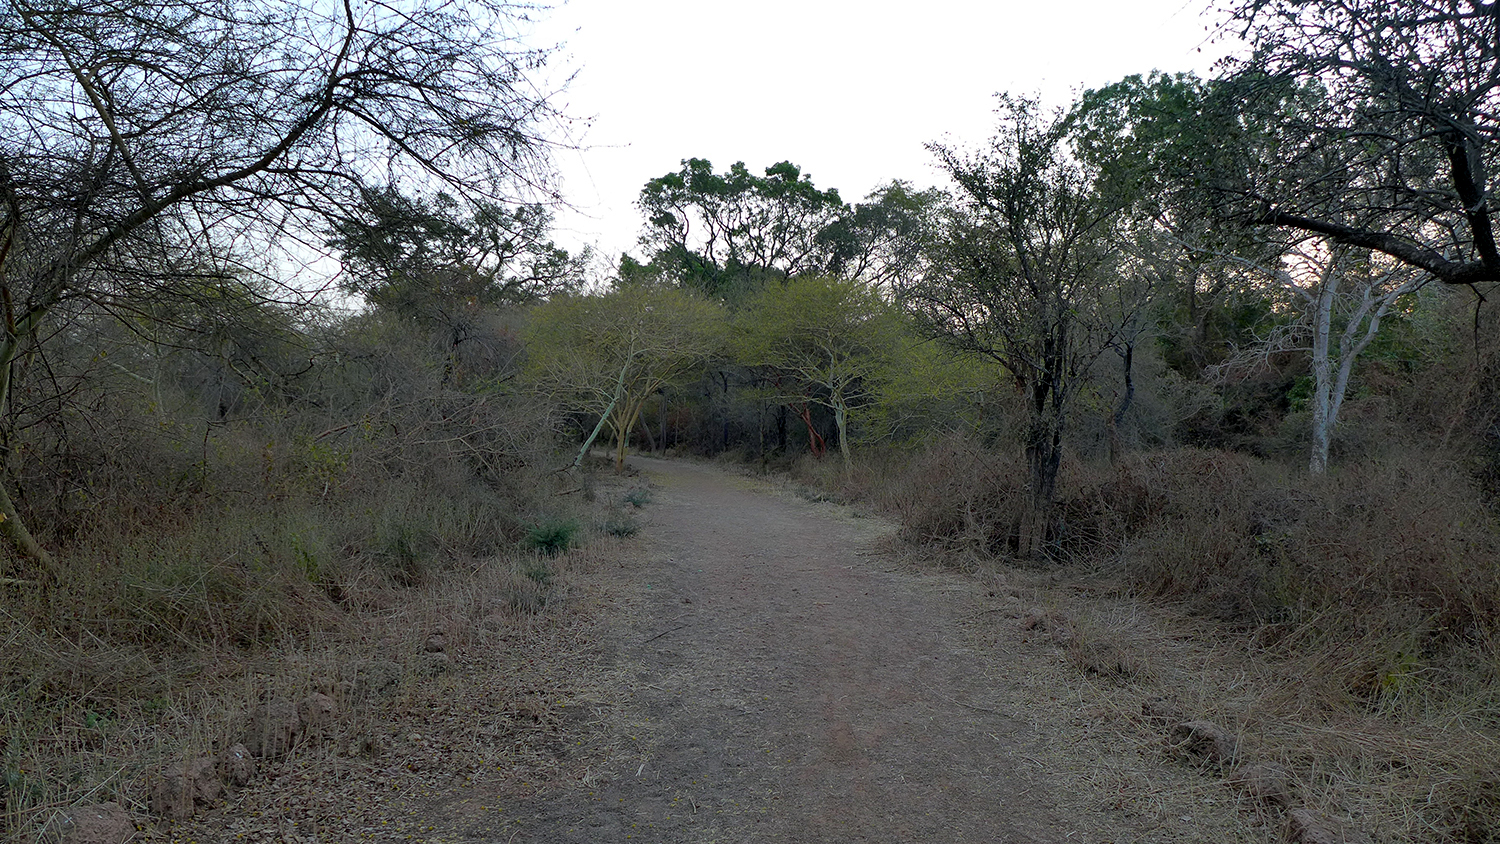 Une fois dans le parc, les arbres offrent un oasis de fraicheur et de calme que les Ouagalais apprécient pour se balader et faire du sport.